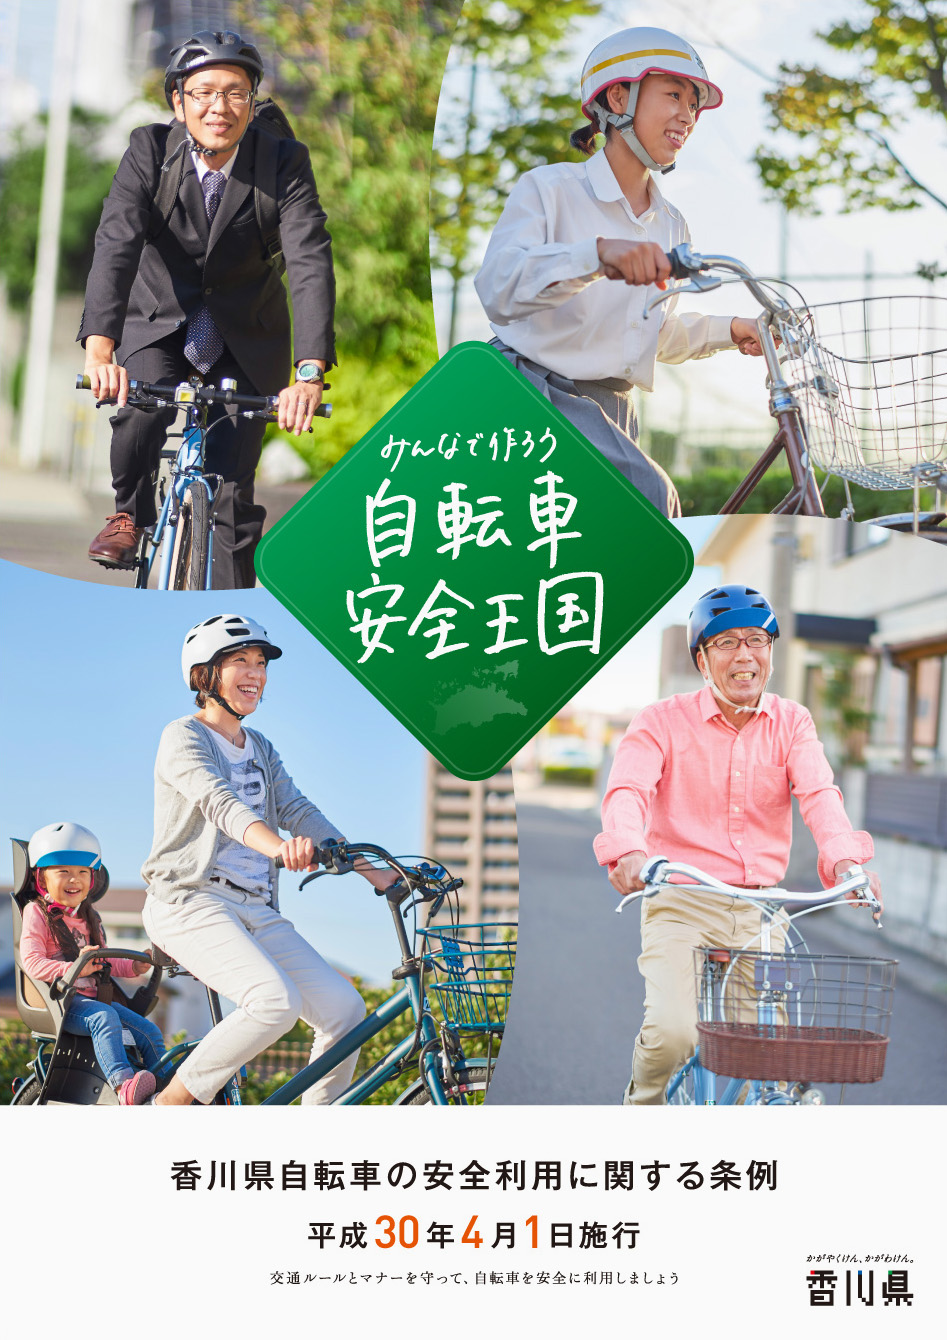 香川県,自転車,条例,ポスター